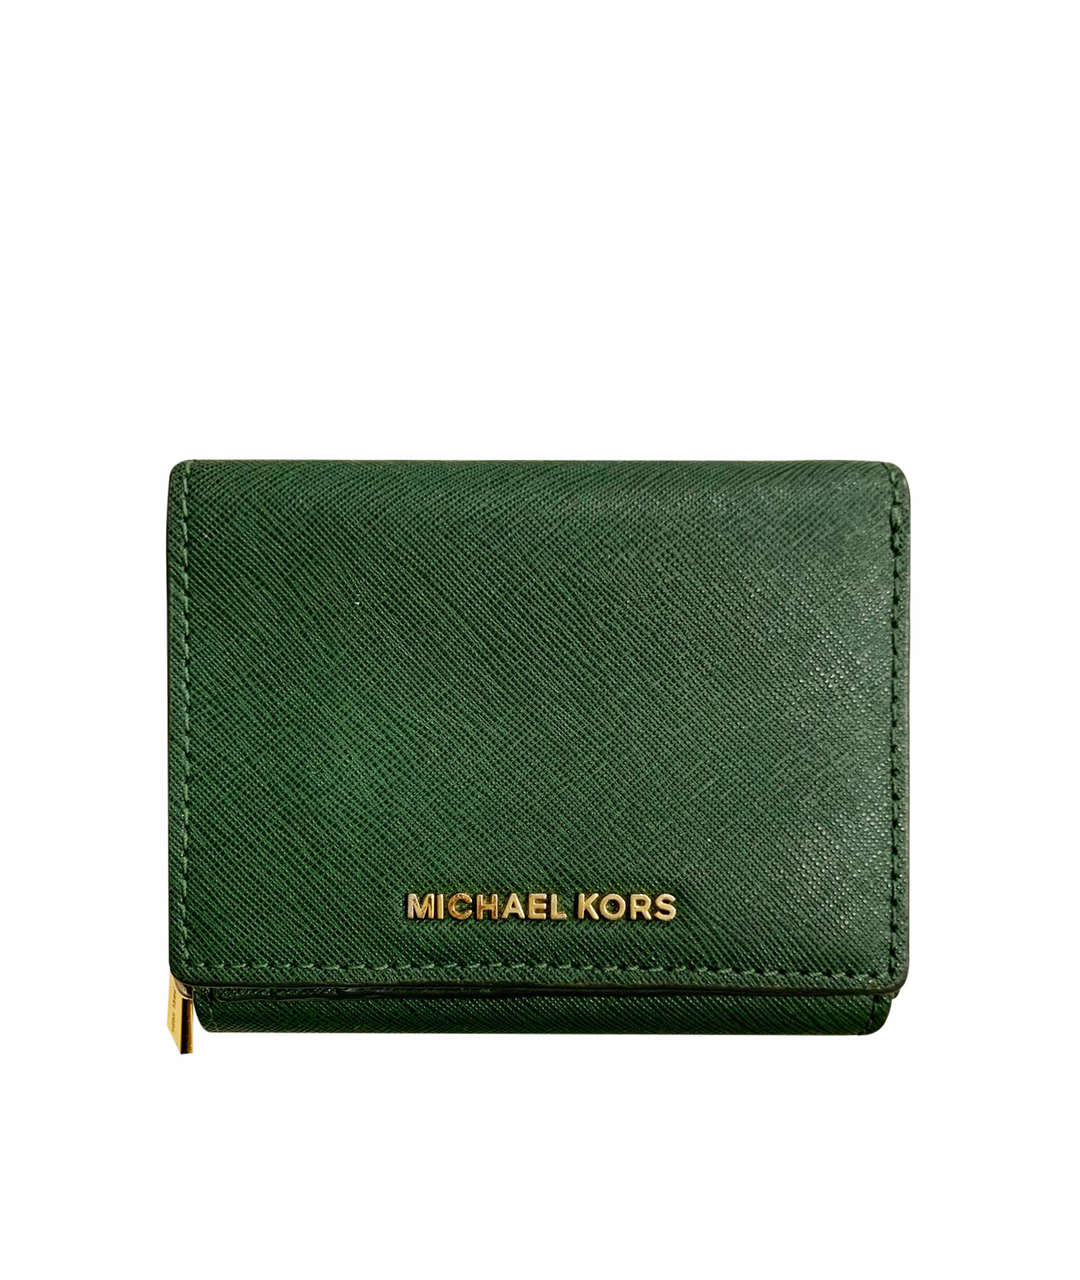 MICHAEL KORS Зеленый кожаный кошелек, фото 1